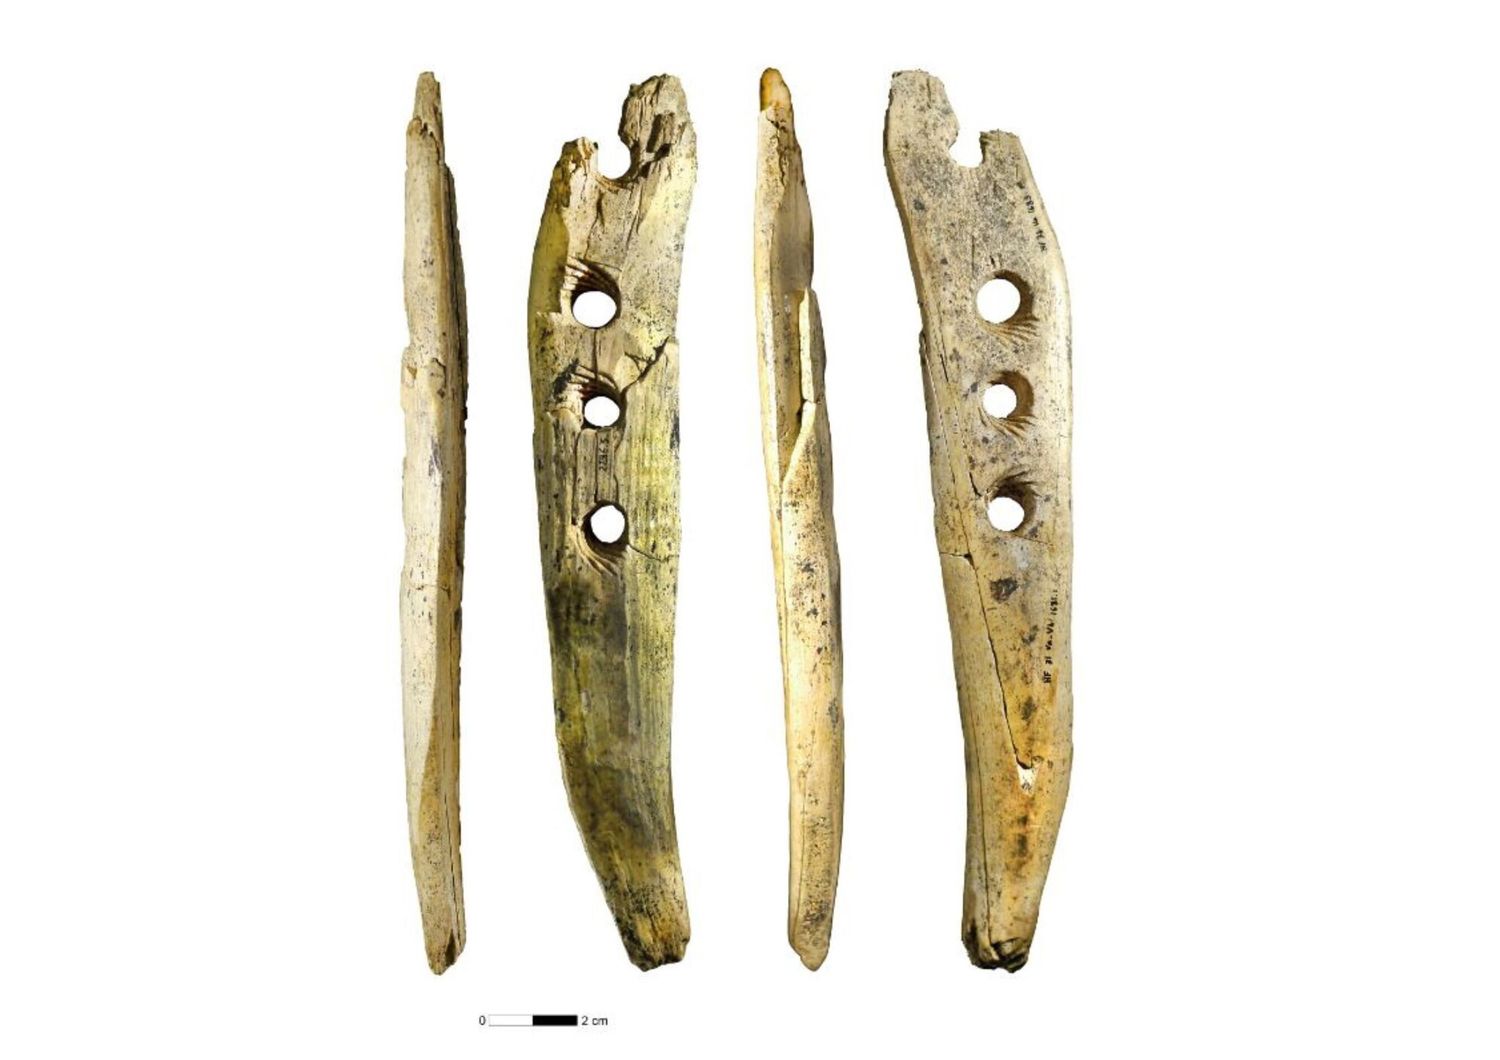 Bacchetta traforata in avorio proveniente dalla grotta di Hohle Fels, nella Germania sudoccidentale, con quattro vedute